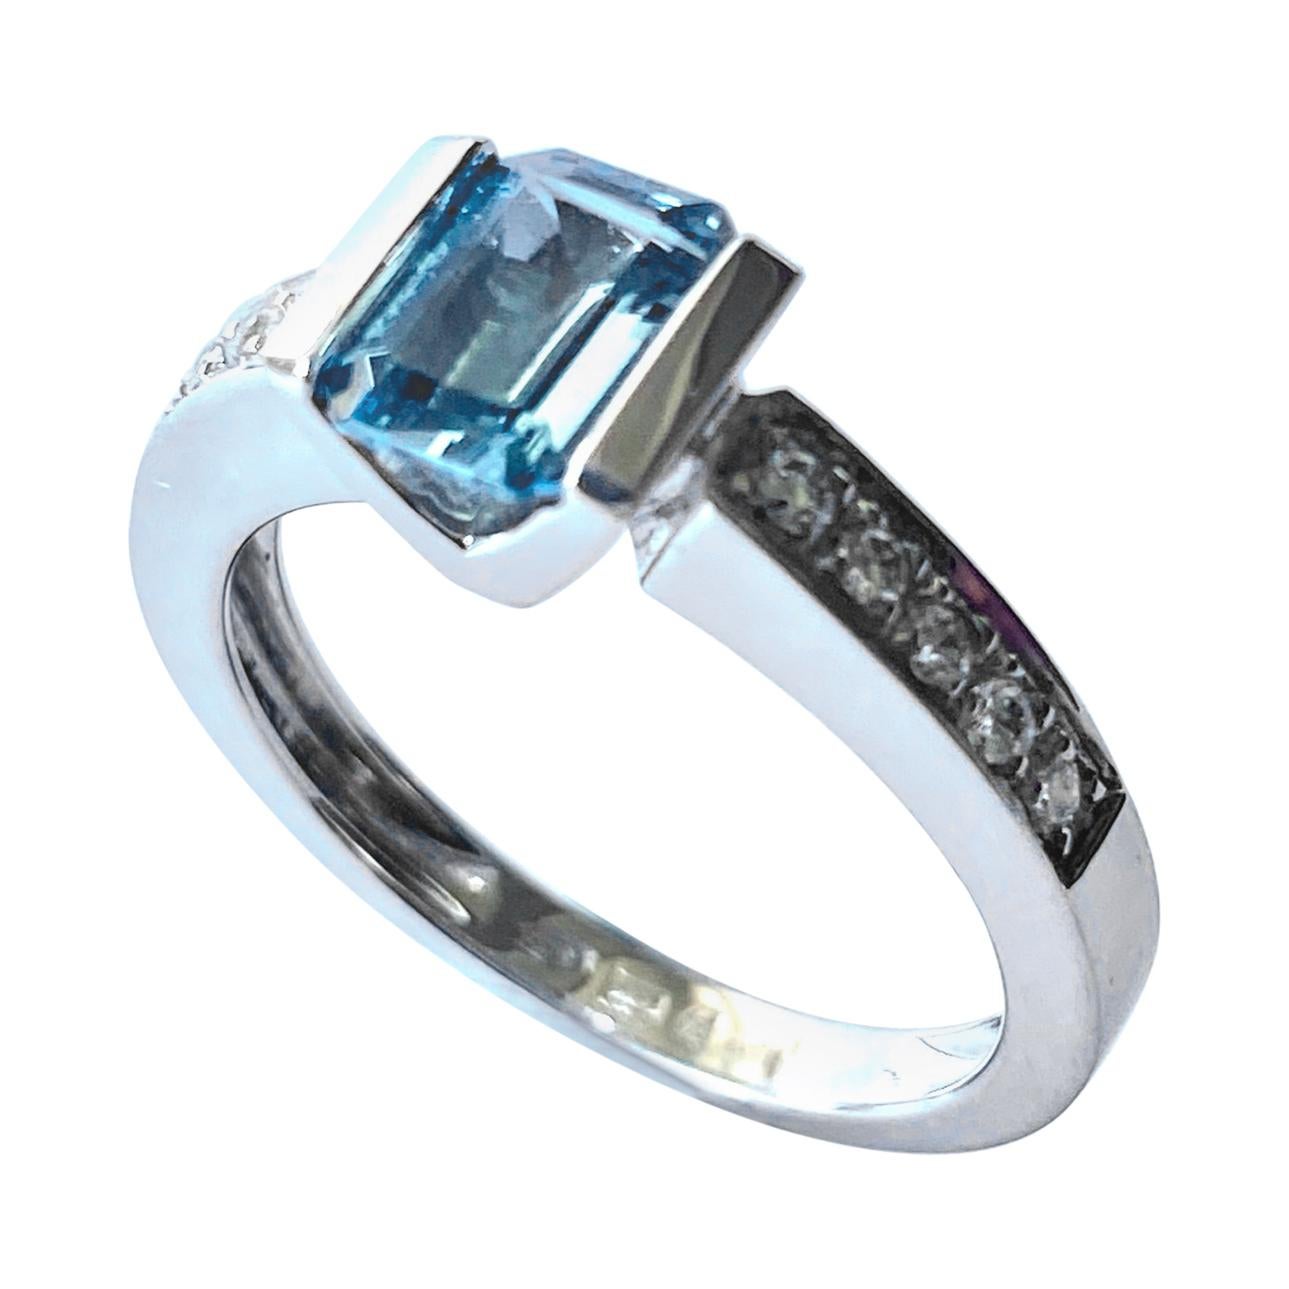 Aquamarine - Diamonds White Gold Ring, Alberti Gioielli, Valenza - Italy